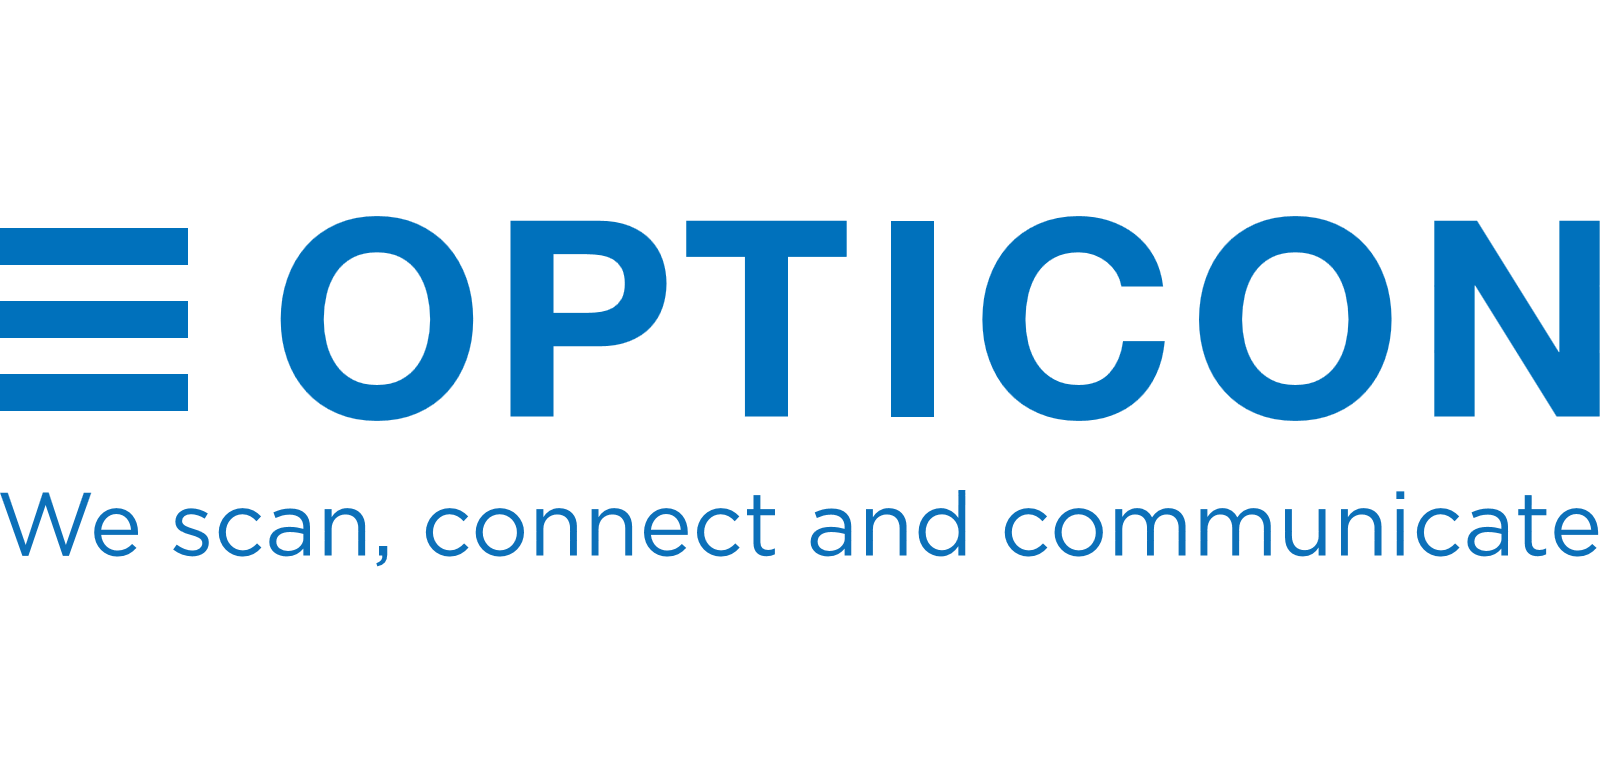 opticon-logo